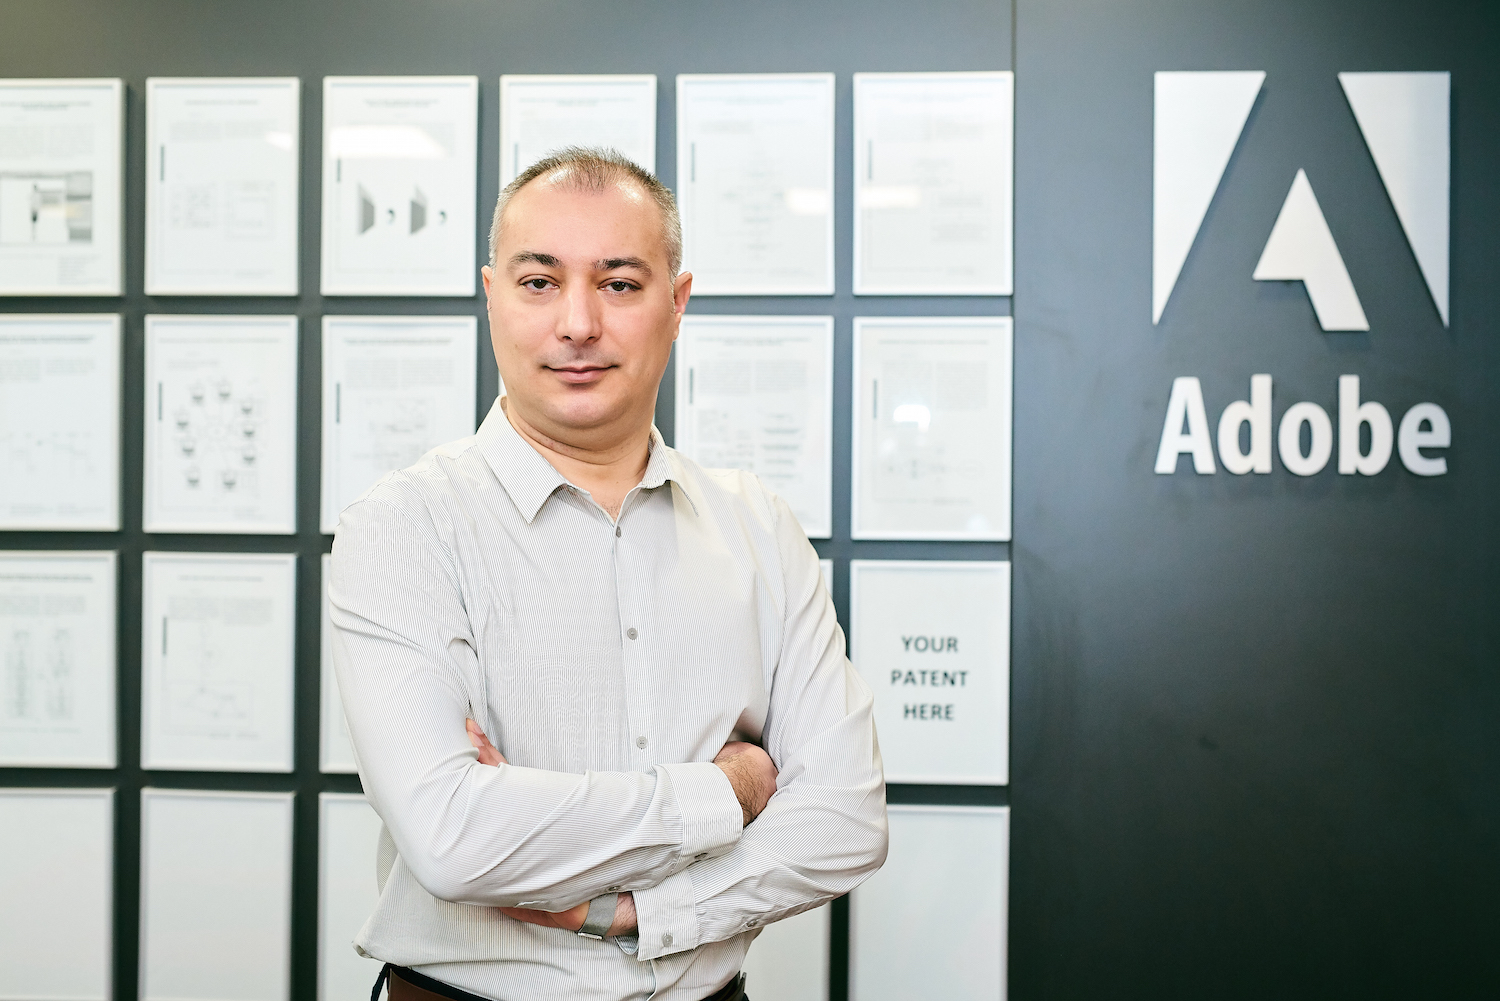 Gigantul american Adobe le dă celor 700 de angajaţi din România câte 250 dolari pentru a-şi lua echipamente pentru acasă